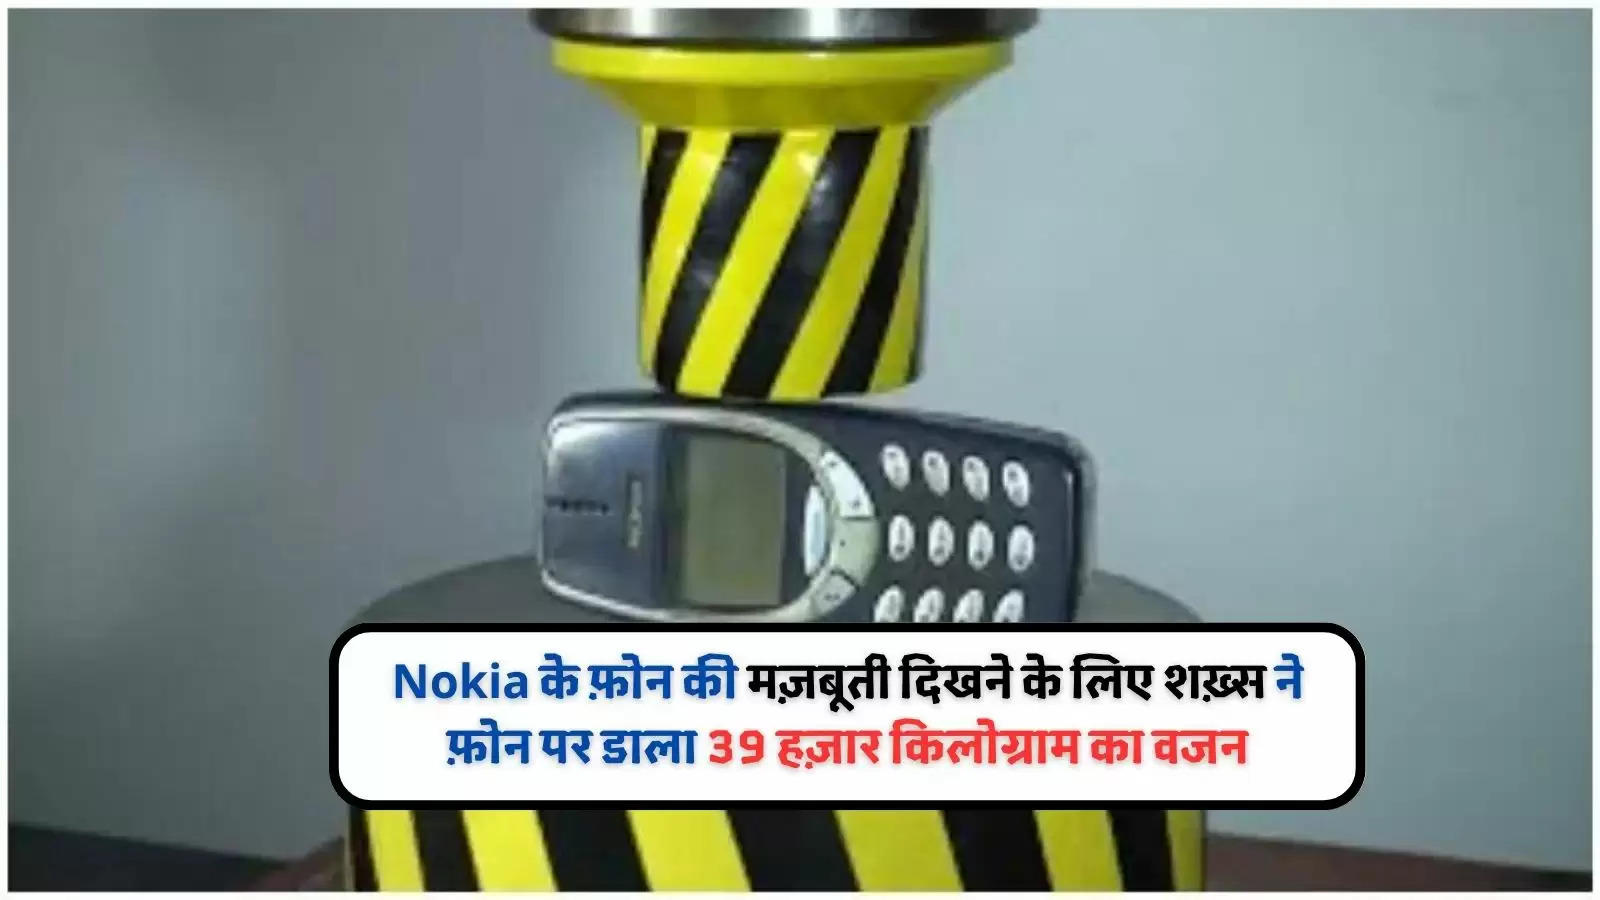 Nokia के फ़ोन की मज़बूती दिखने के लिए शख़्स ने फ़ोन पर डाला 39 हज़ार किलोग्राम का वजन